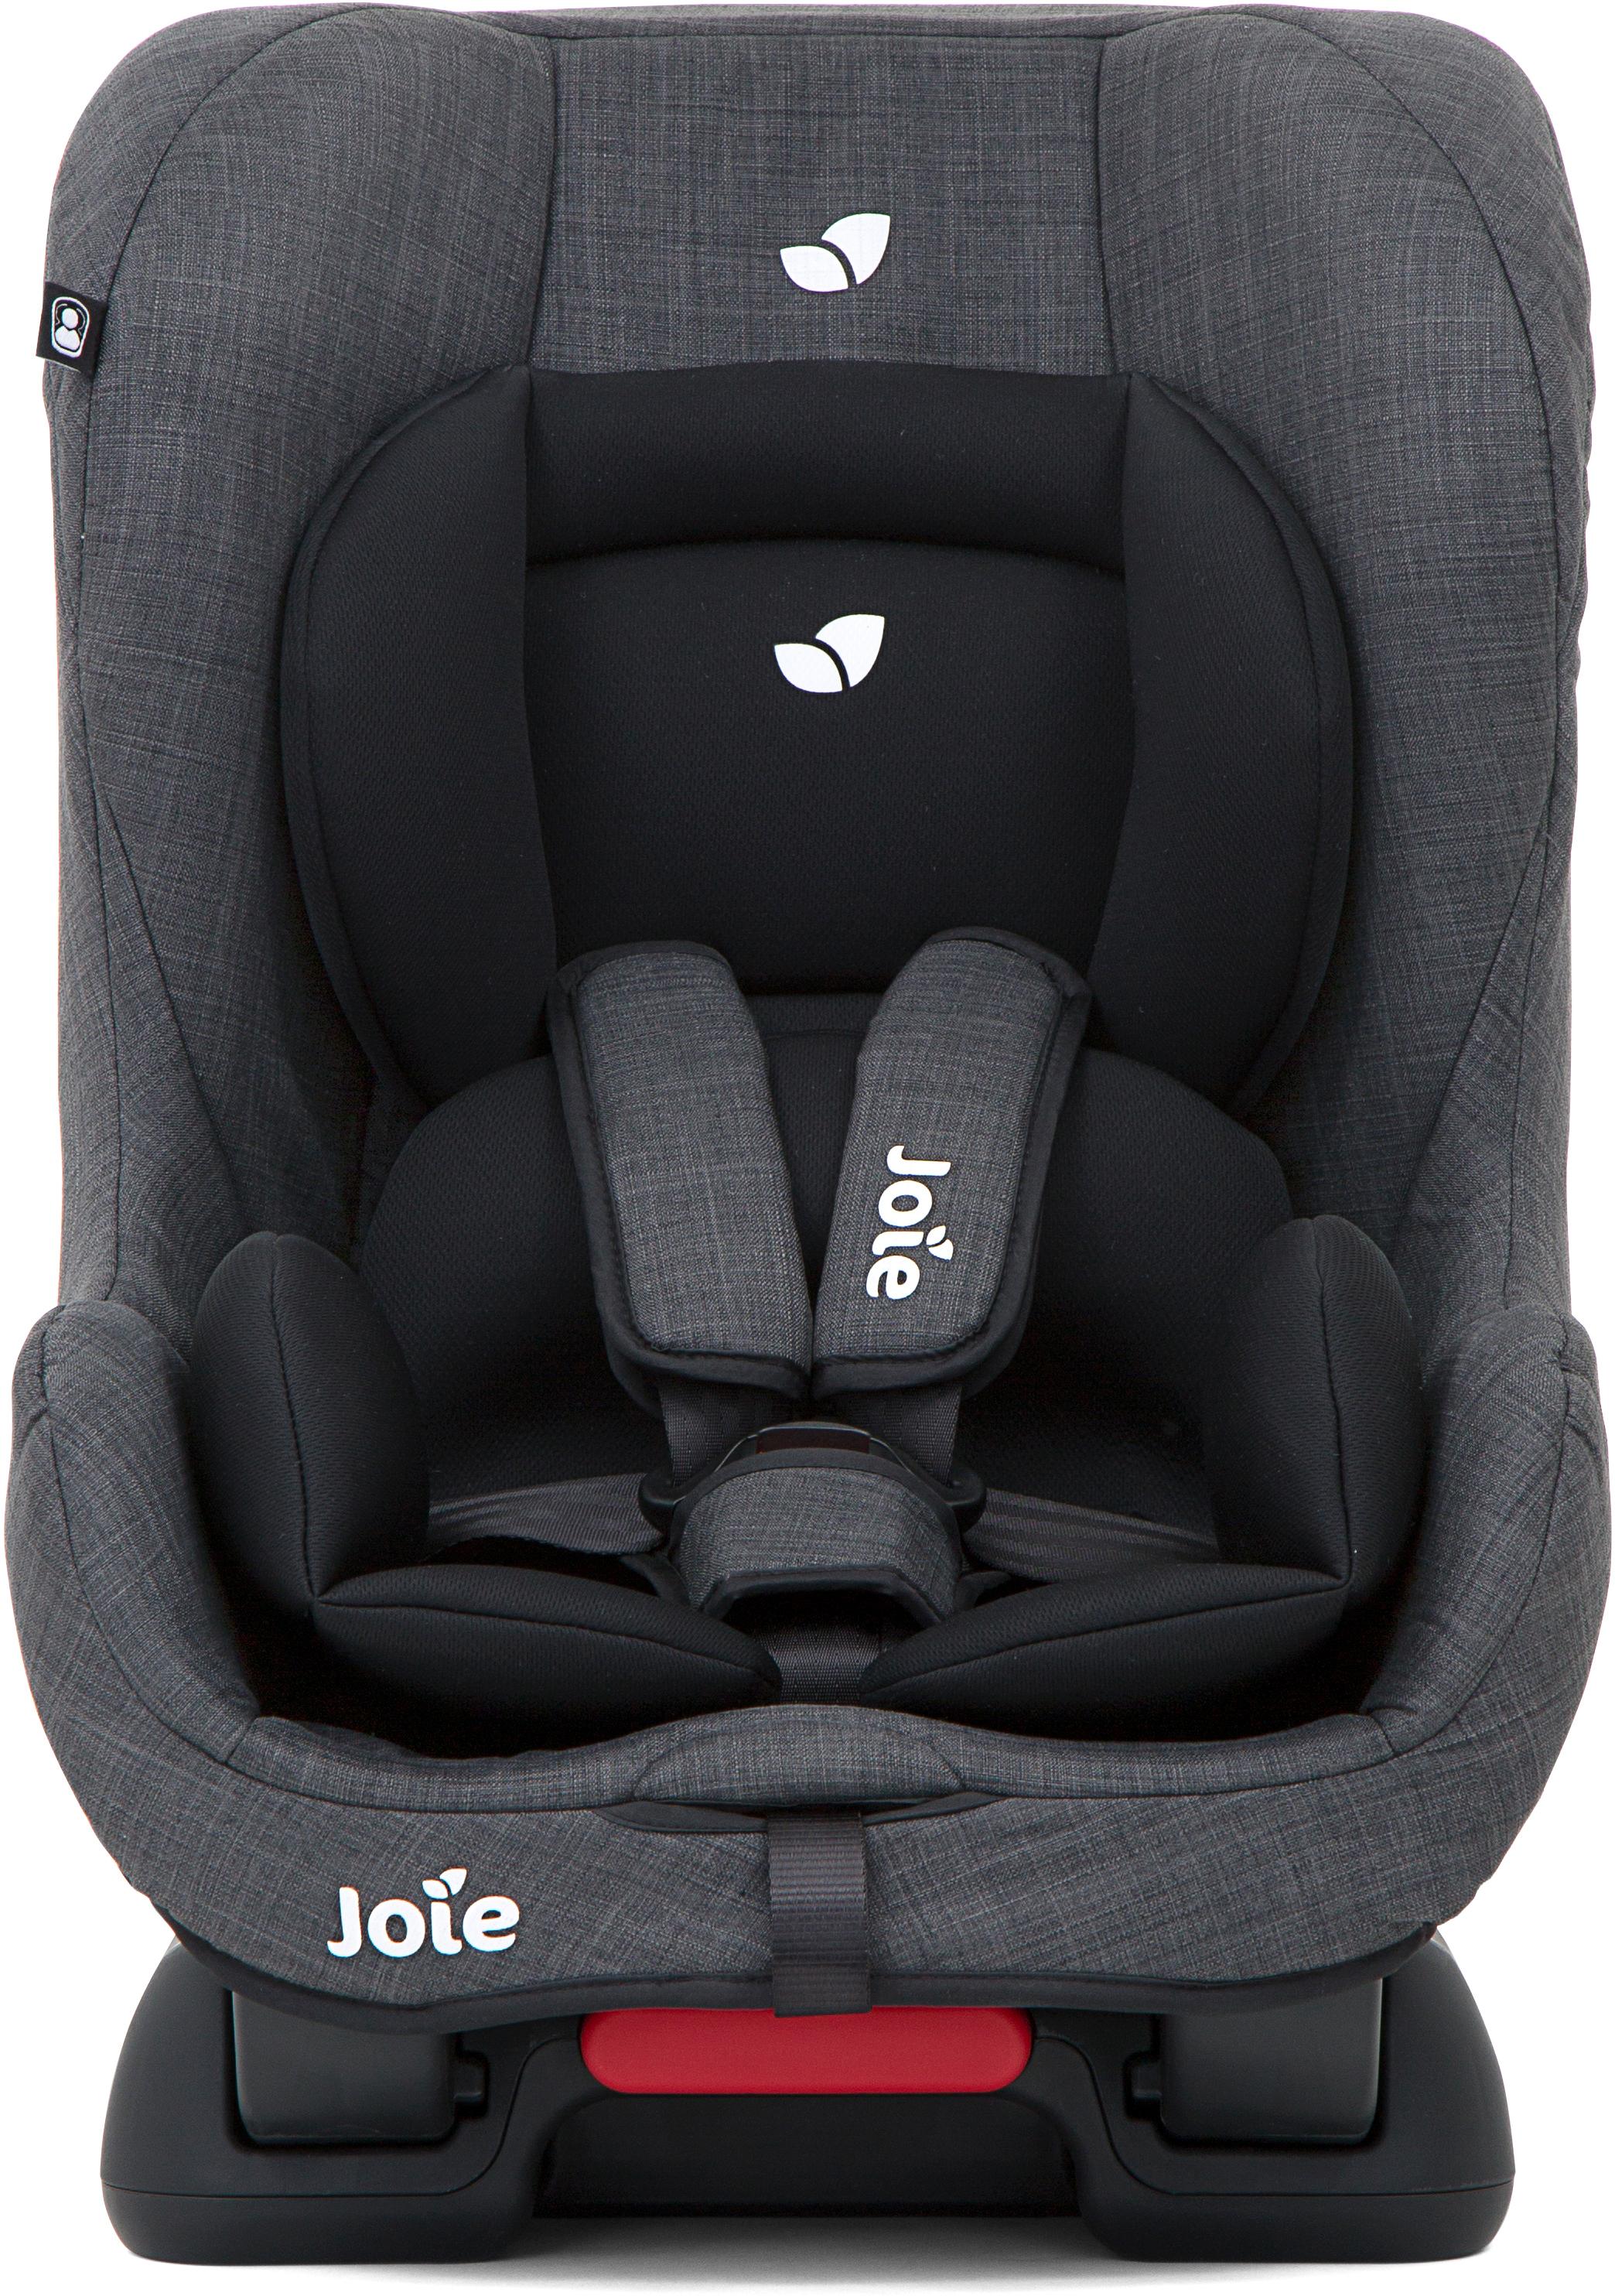 Joie Tilt 0+/1 Baby Car Seat - Pavement 